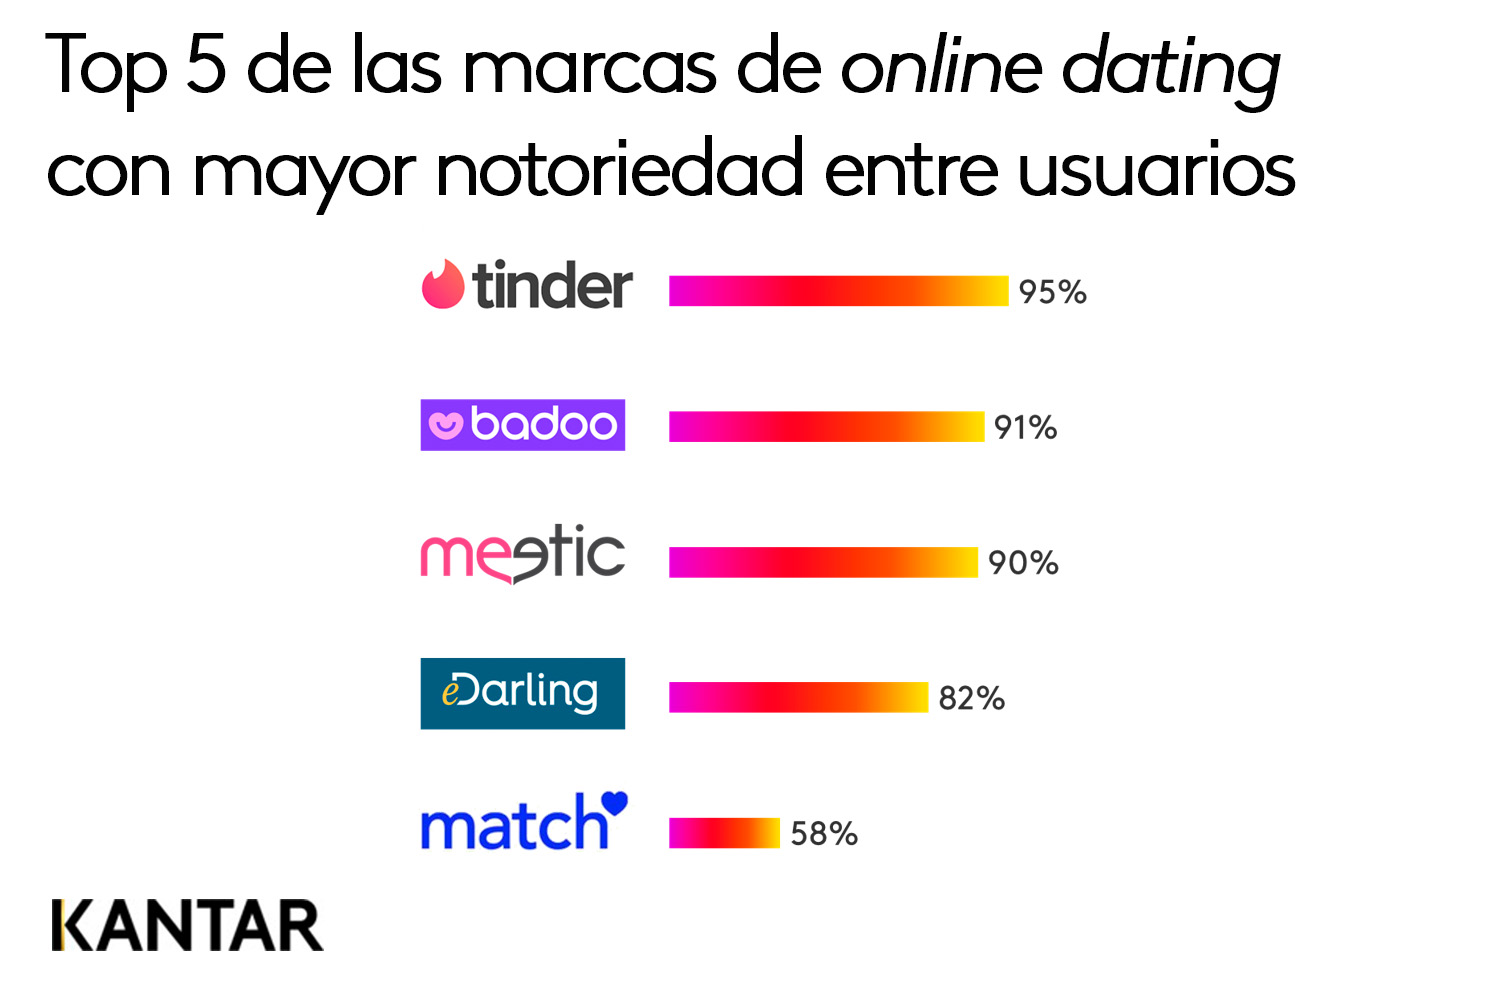 Top 5 de las marcas de online dating con mayor notoriedad